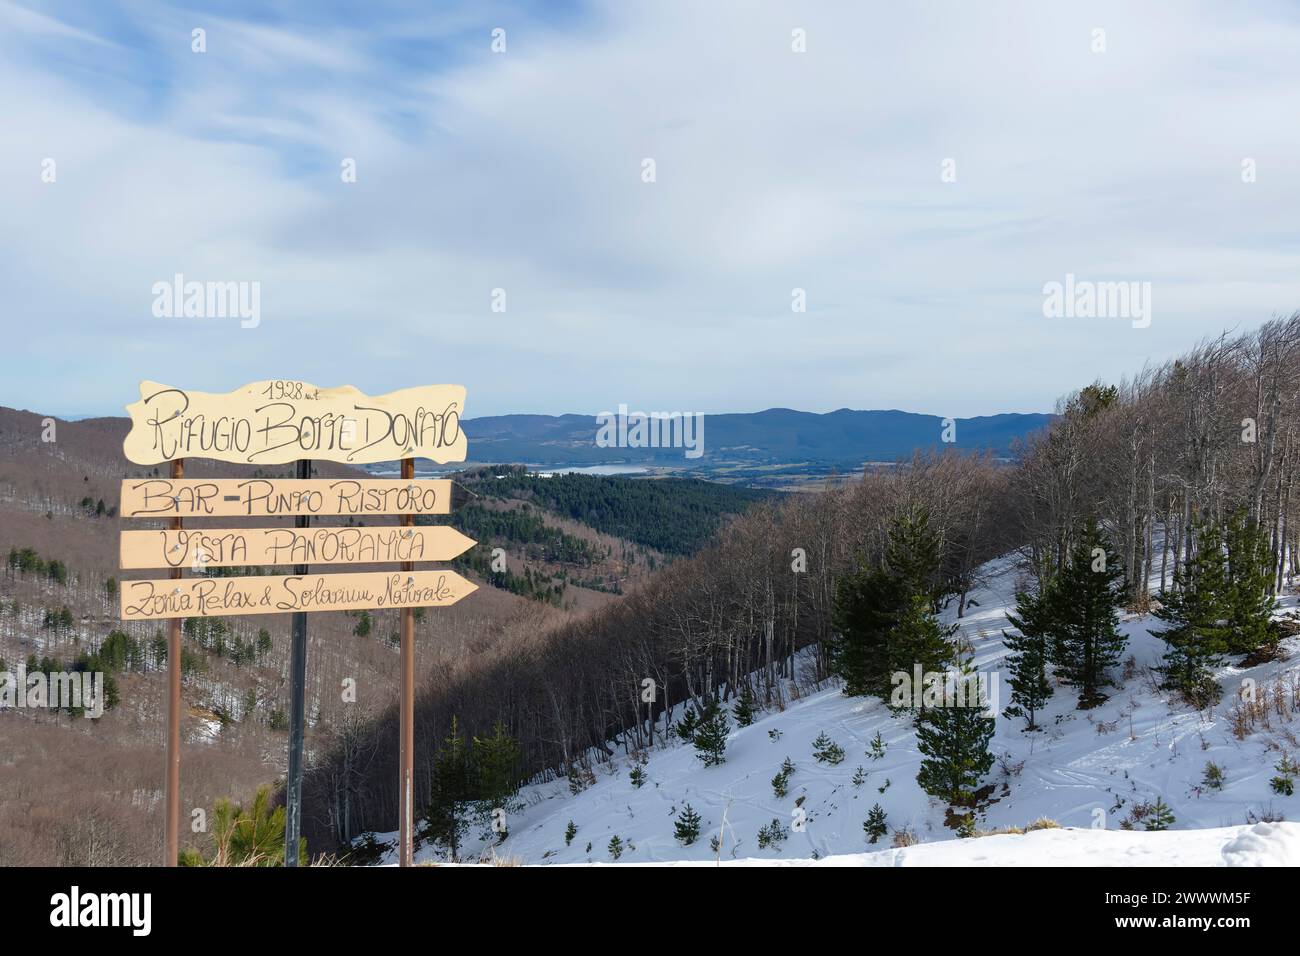 Panneau, Monte botte Donato, montagnes de Sila, Apennins du Sud, Parc National de Sila, Calabre, Italie Banque D'Images